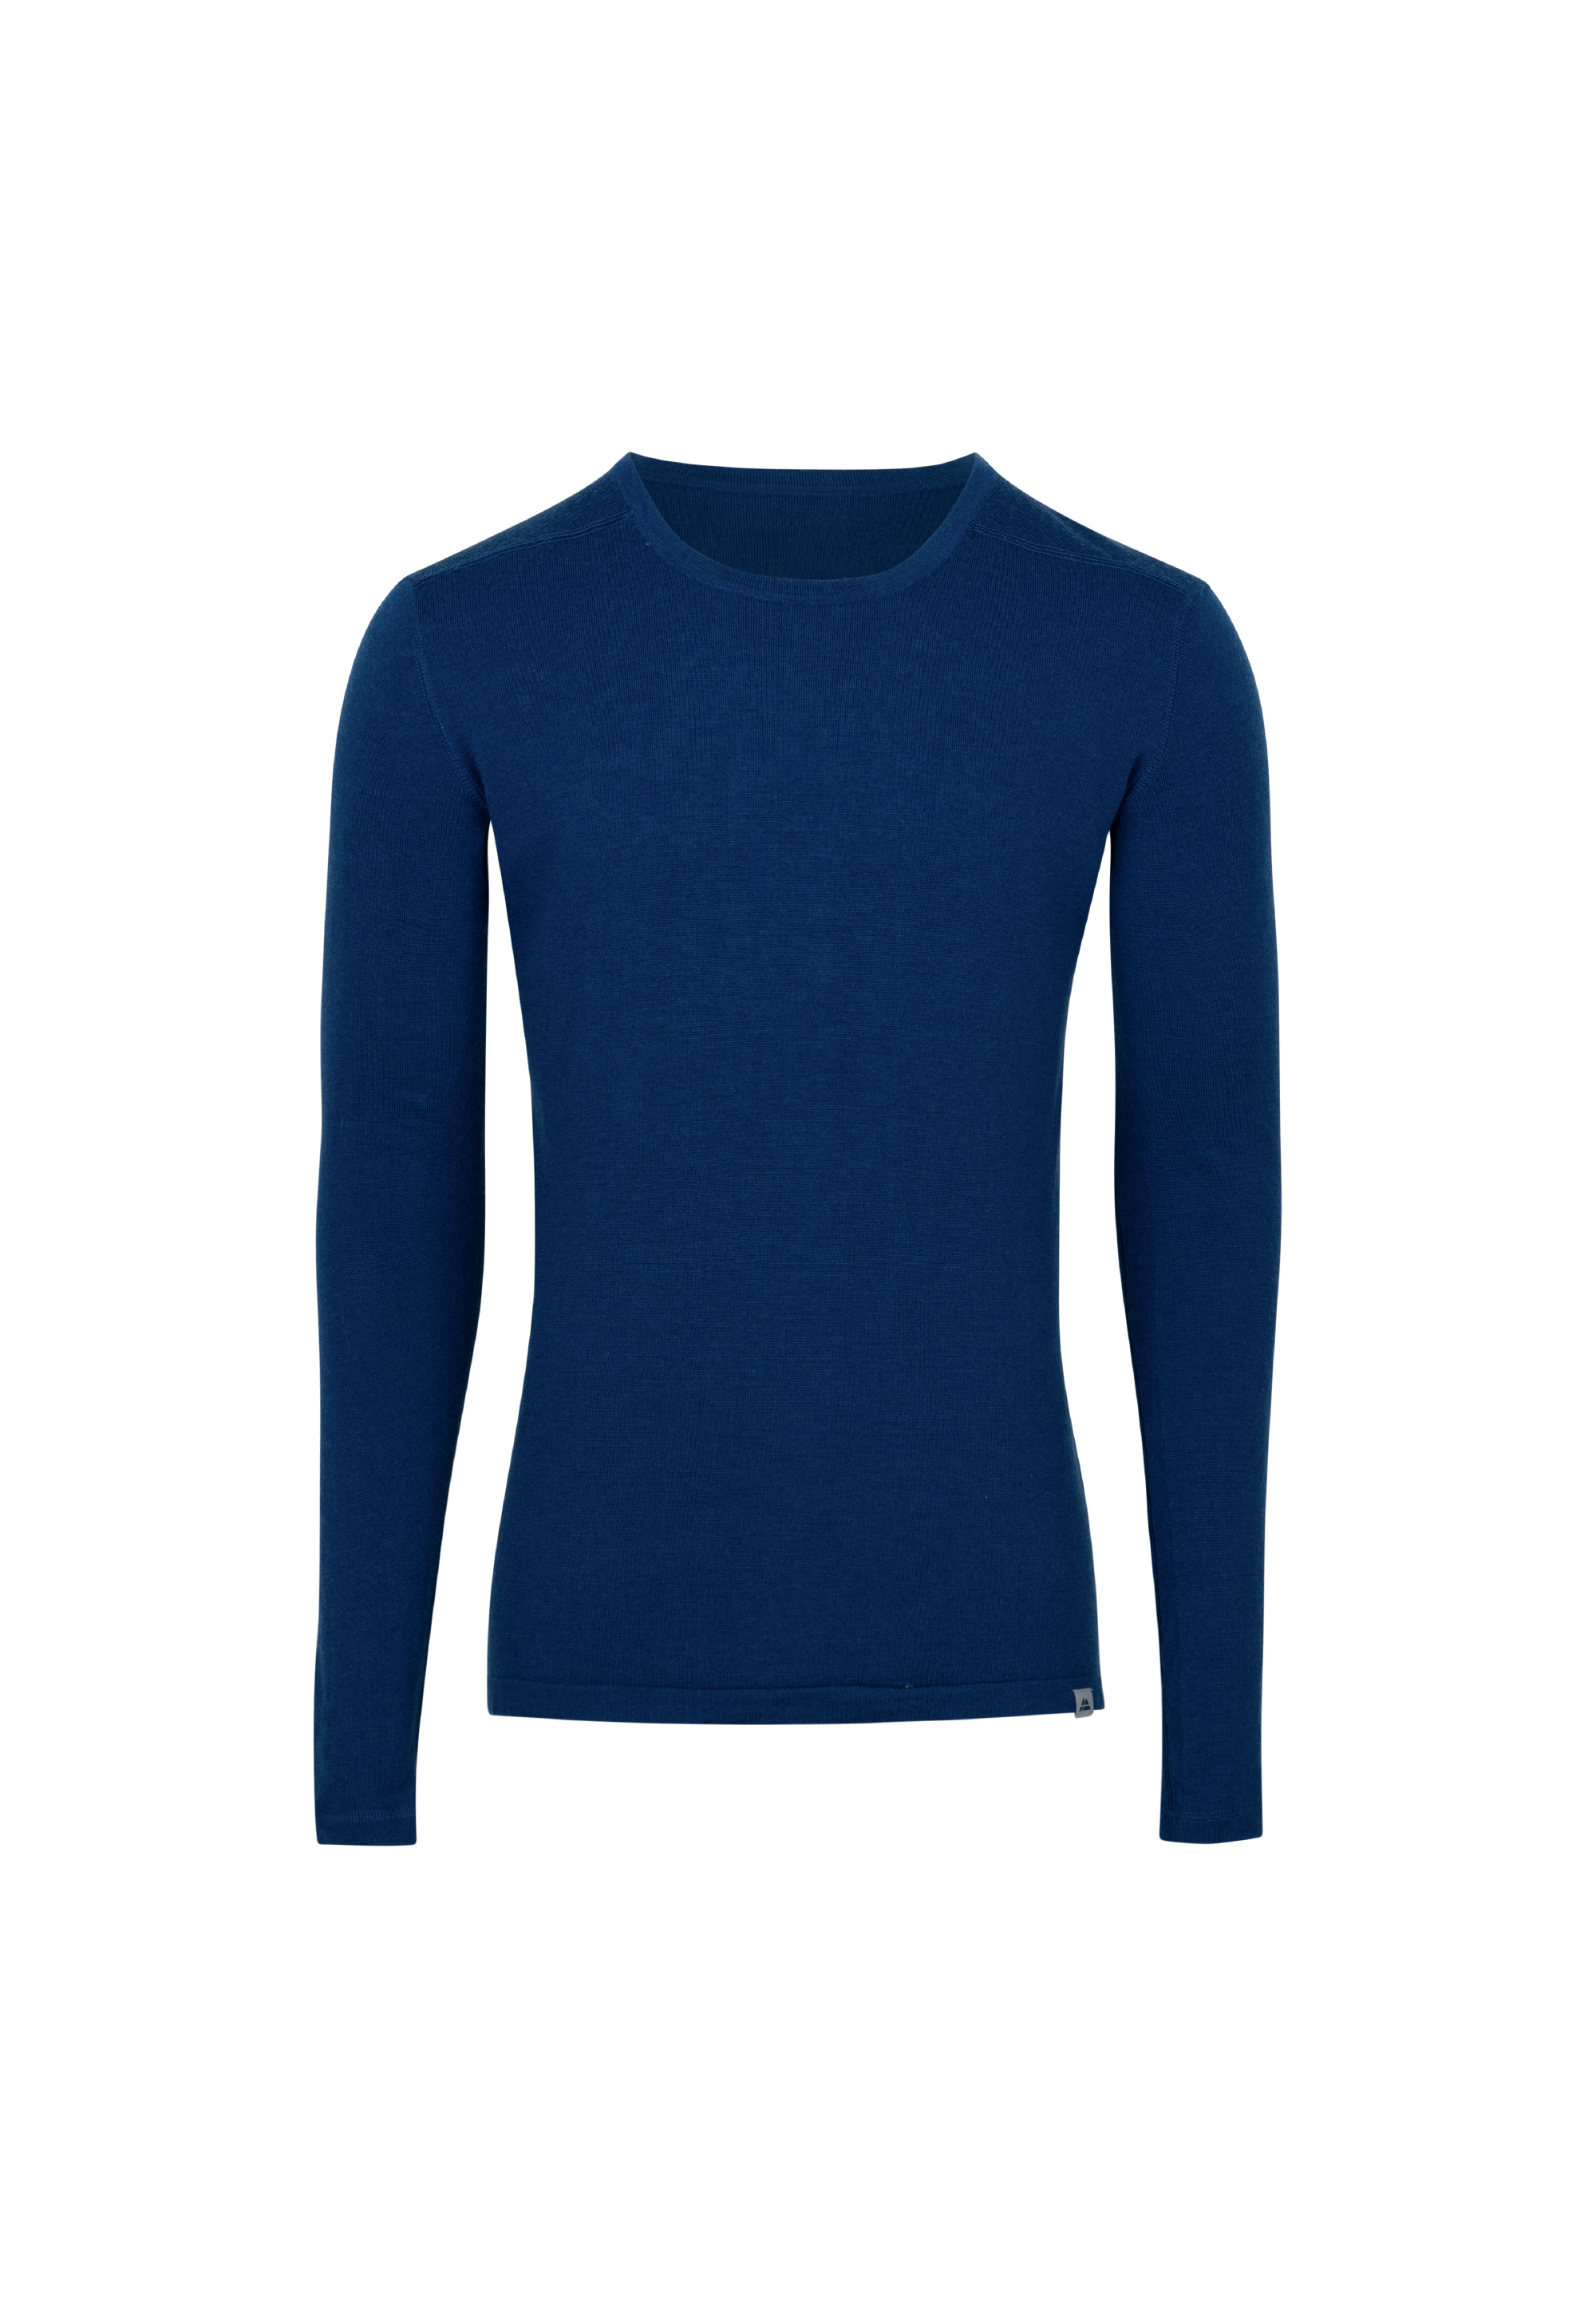 Рубашка DANISH ENDURANCE Funktionsshirt Herren Merino Funktionsshirt, темно-синий цена и фото